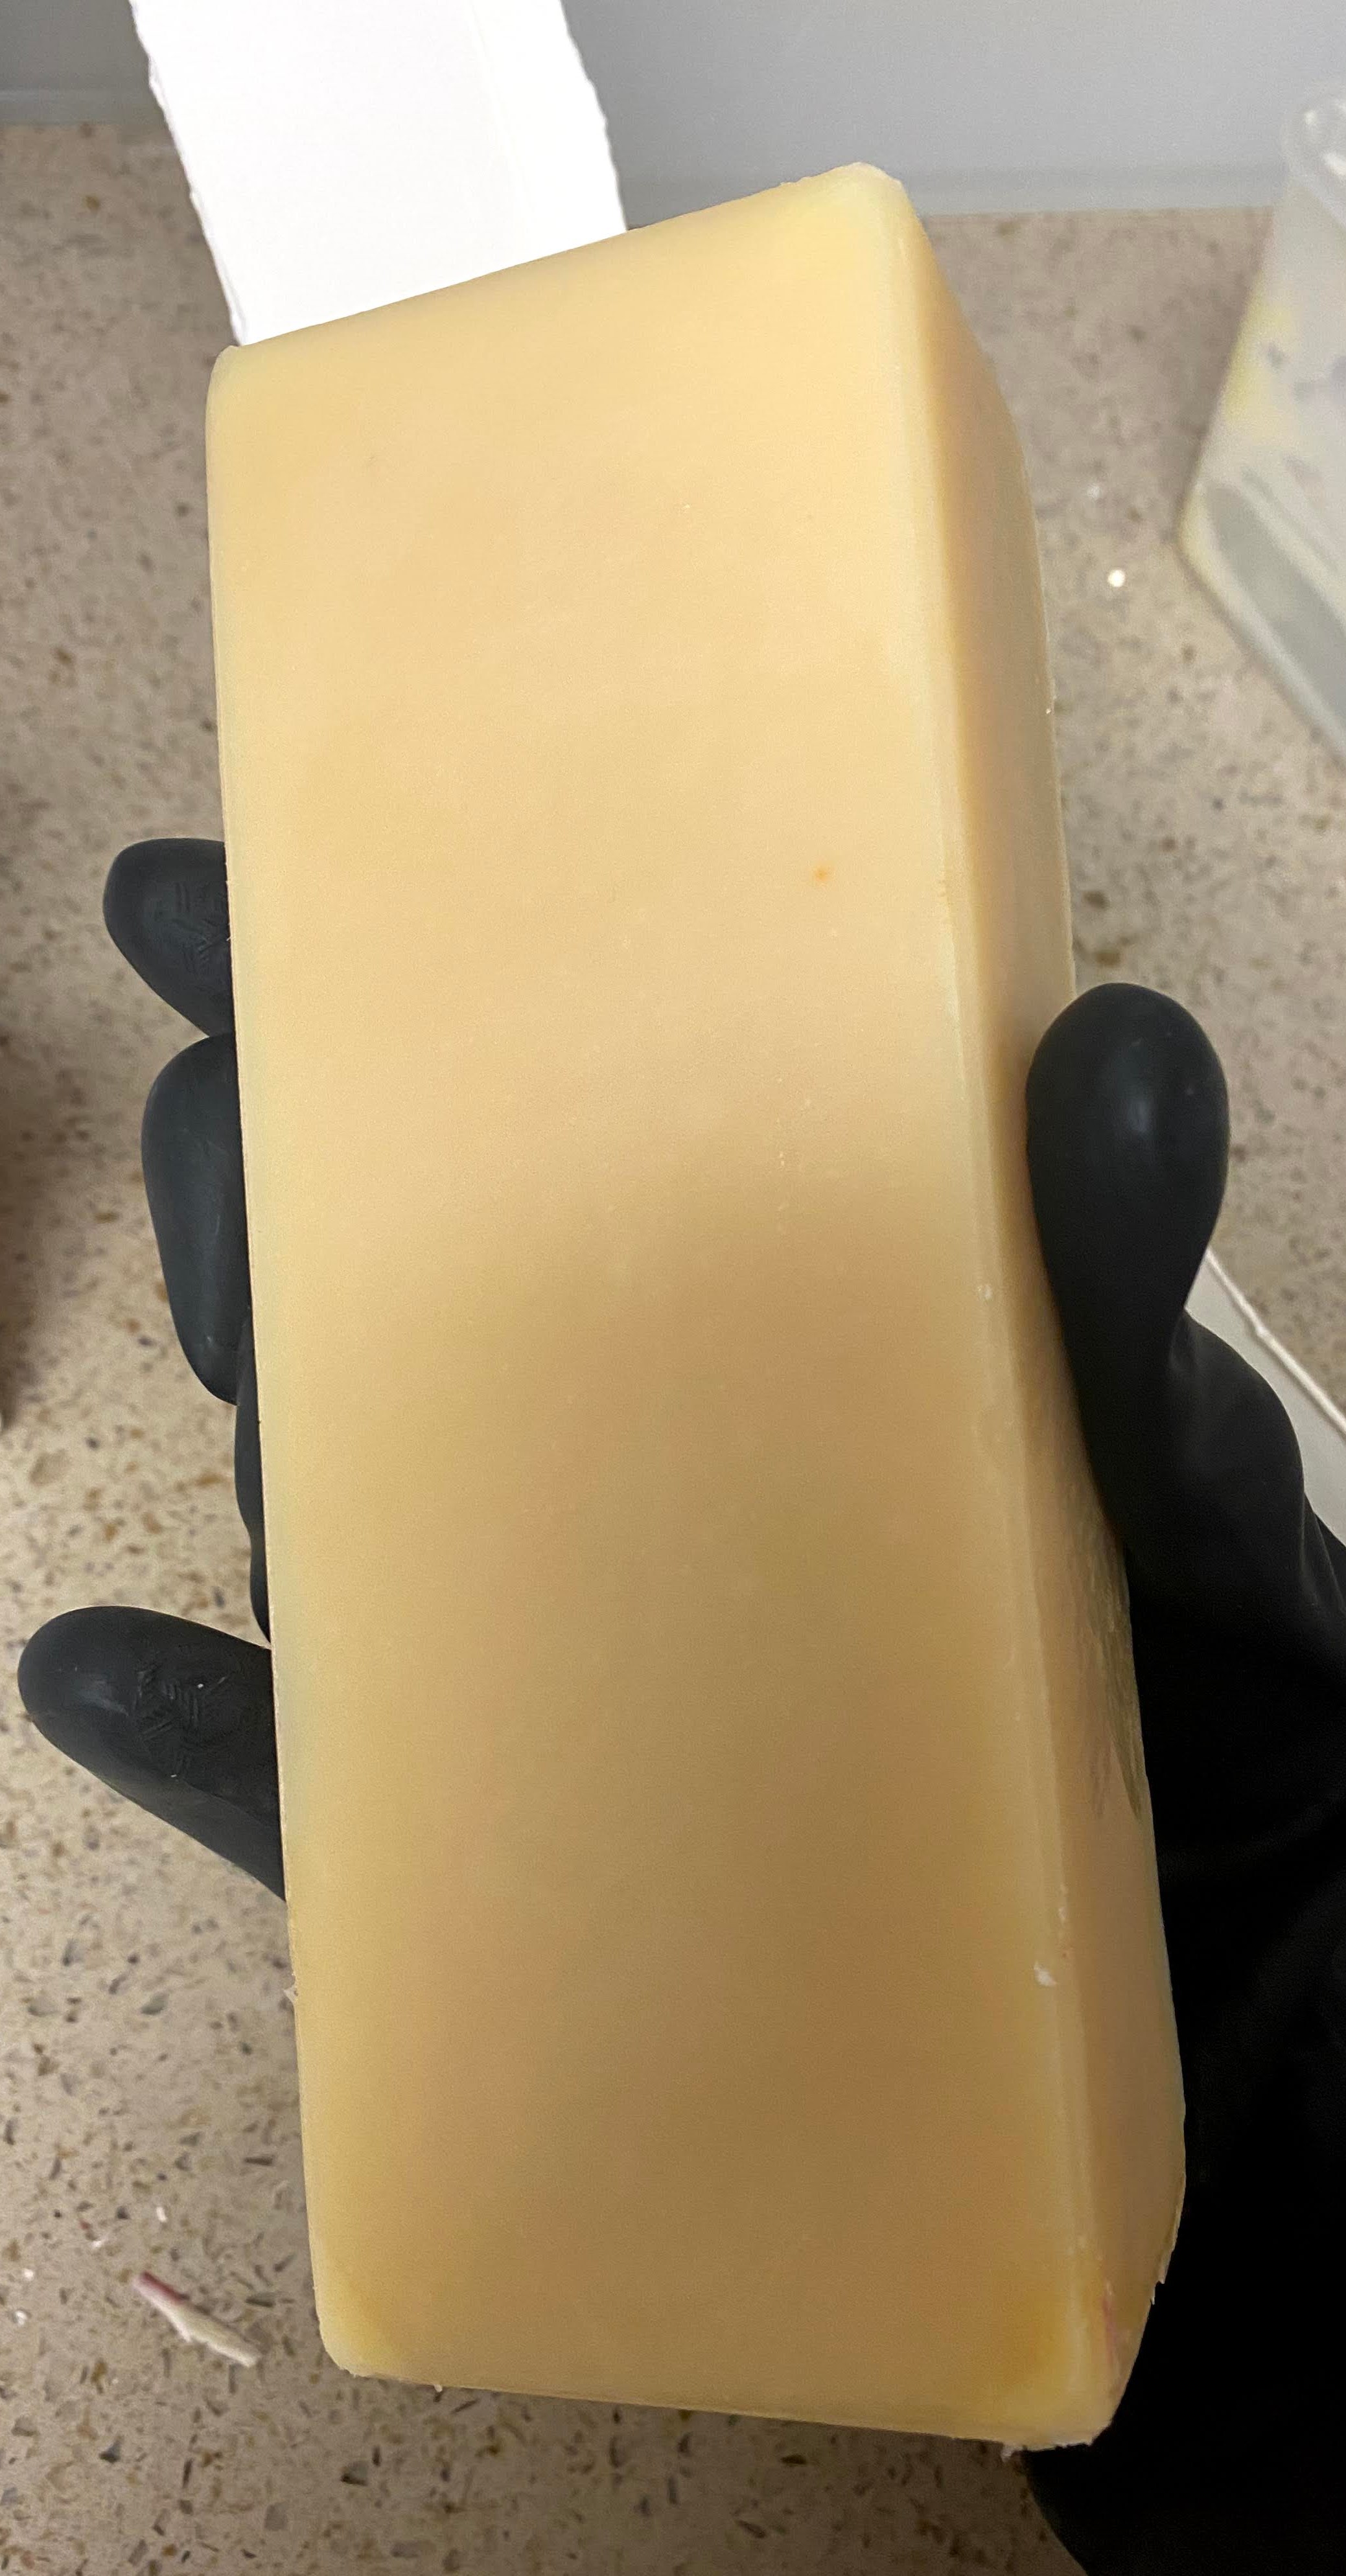 Unmolding signature soap